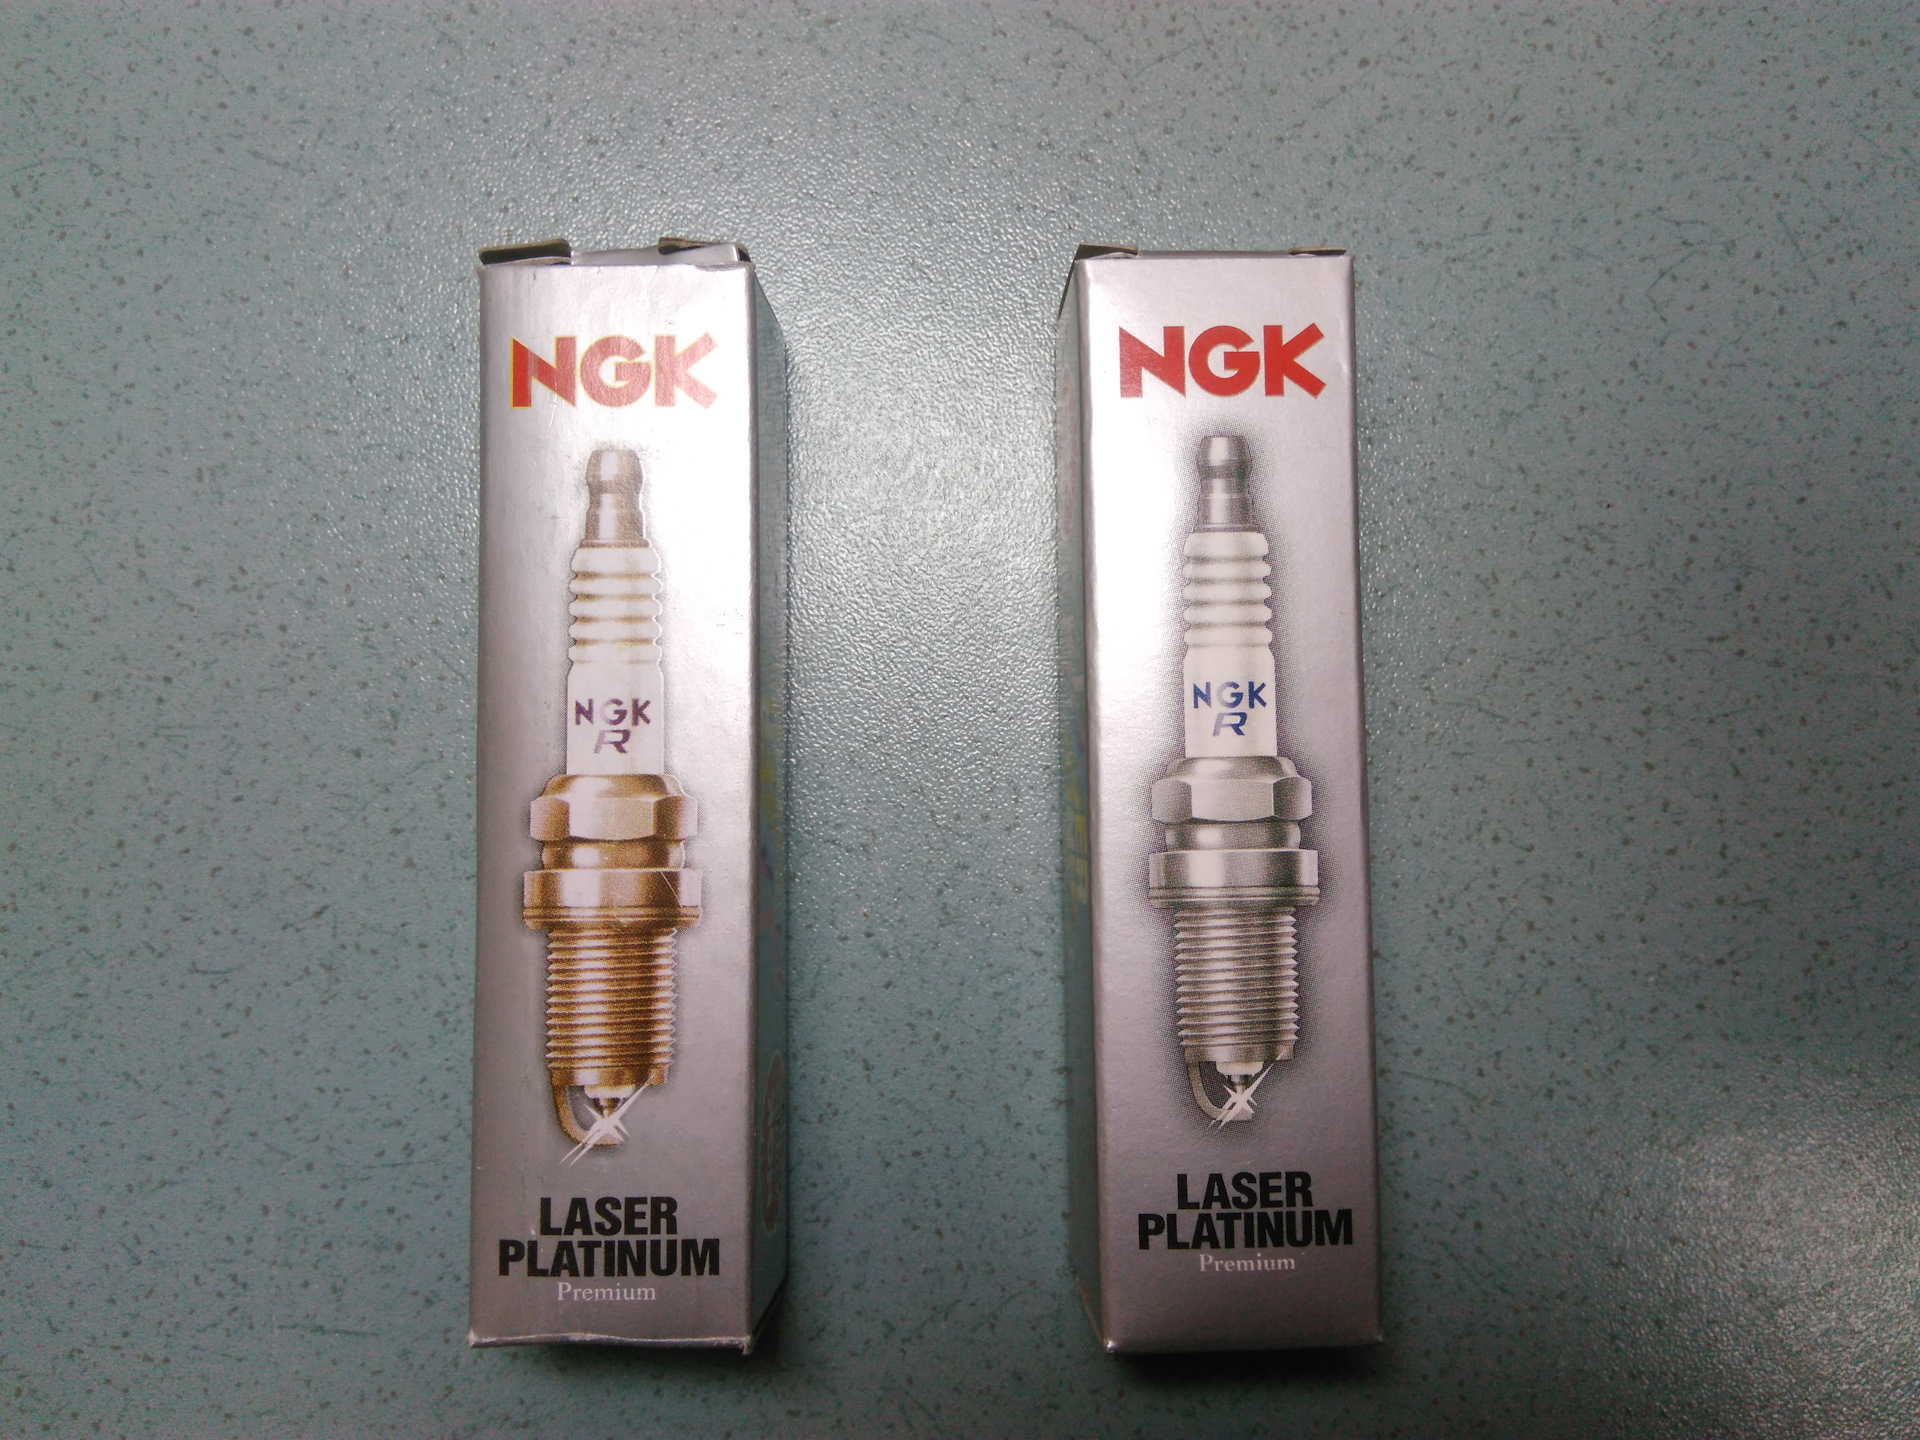 Как отличить подделку ngk. NGK 95463 свеча зажигания. NGK svecha podelka Orginal. Оригинальные свечи NGK 22401-ed816. NGK Laser Platinum свечи оригинал.